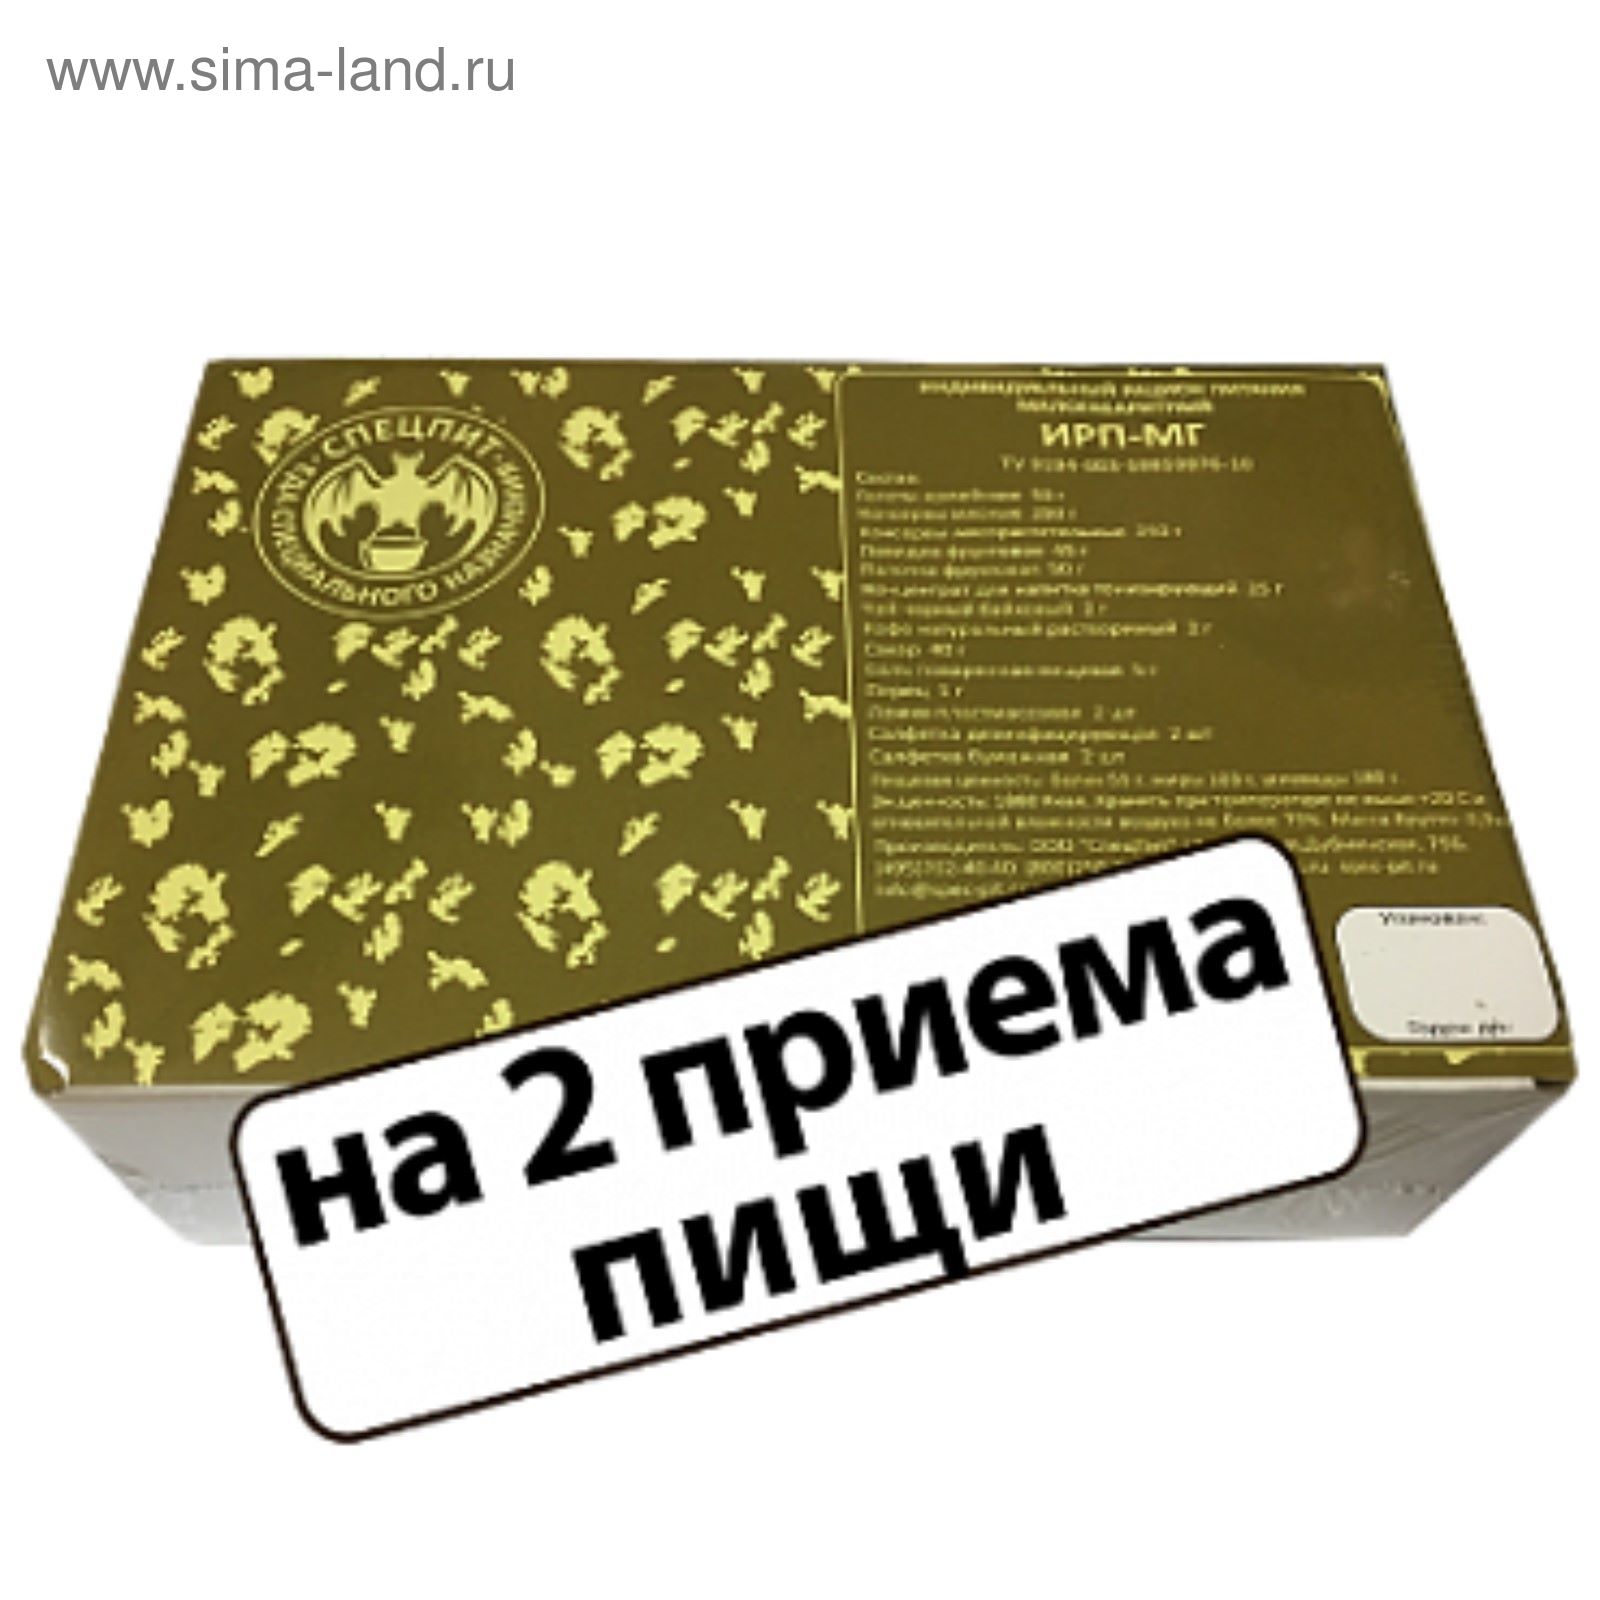 Сухой паек СпецПит "Малогабаритный"(ИРП-МГ),2 приема пищи, 0,9 кг.